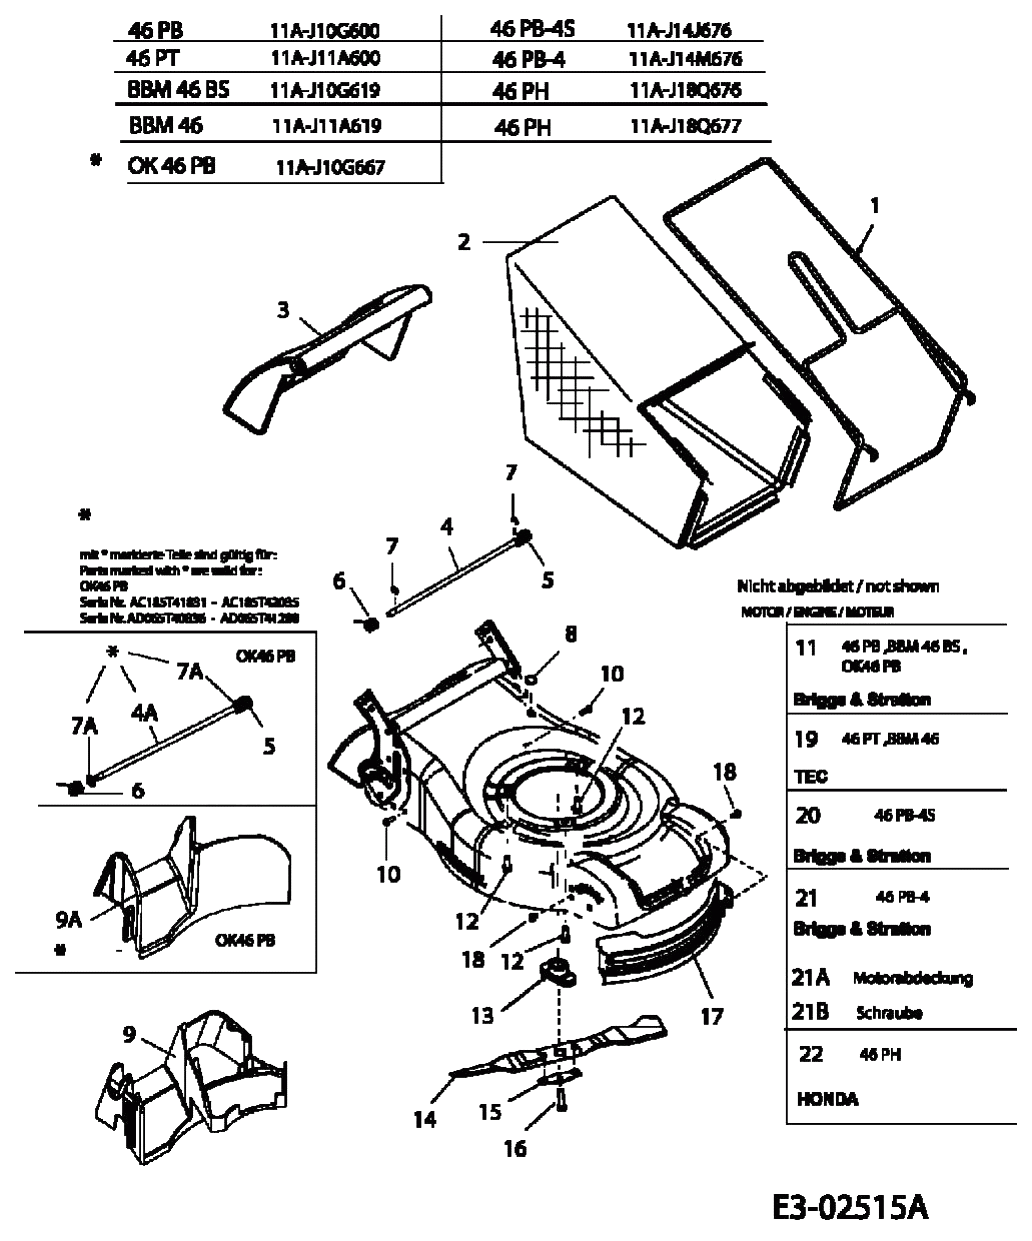 MTD Артикул 11A-J10G600 (год выпуска 2005). Травосборник, ножи, двигатель